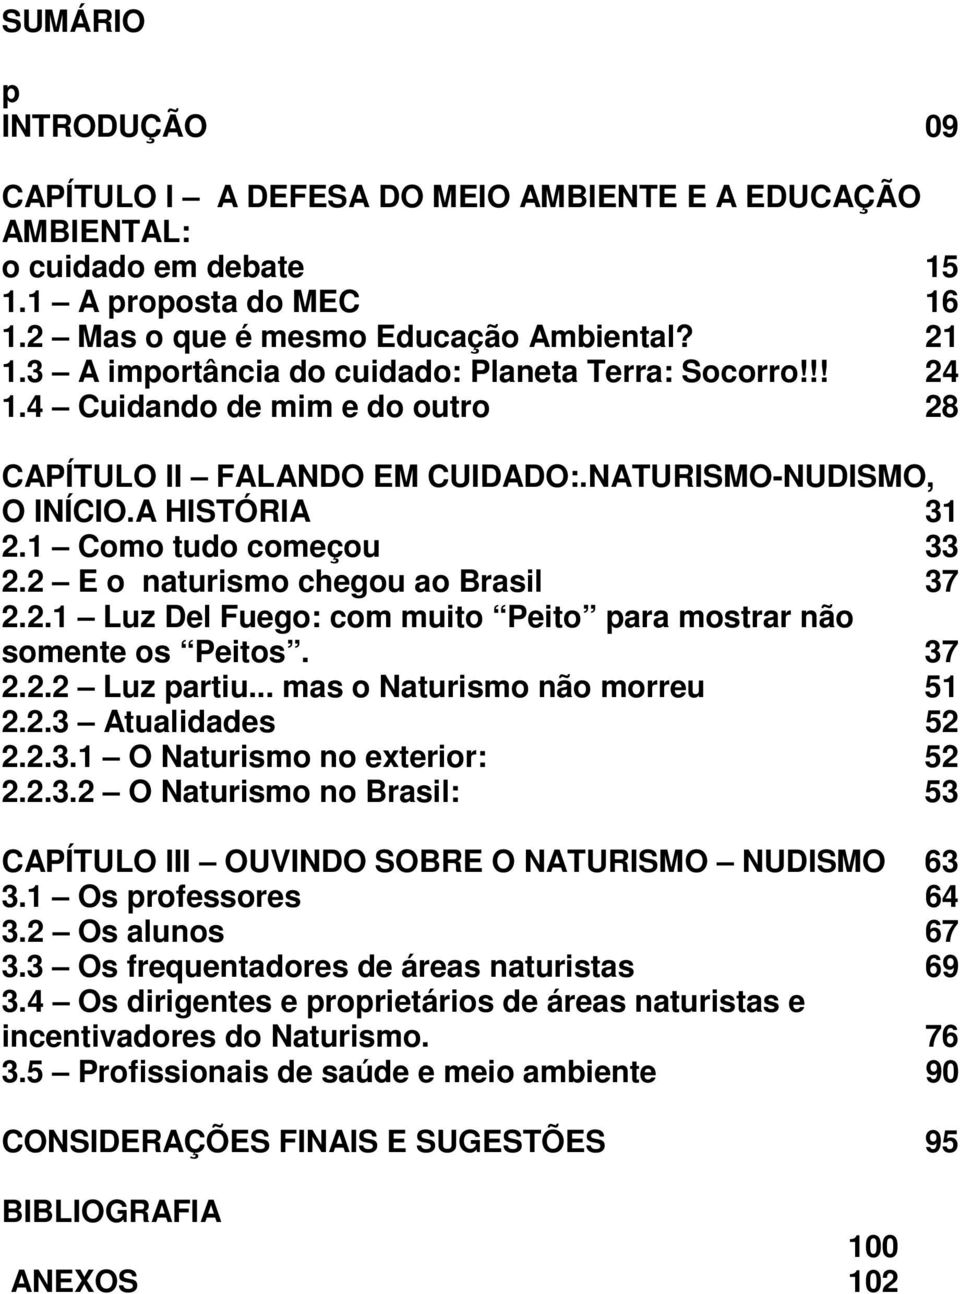 2 E o naturismo chegou ao Brasil 37 2.2.1 Luz Del Fuego: com muito Peito para mostrar não somente os Peitos. 37 2.2.2 Luz partiu... mas o Naturismo não morreu 51 2.2.3 Atualidades 52 2.2.3.1 O Naturismo no exterior: 52 2.